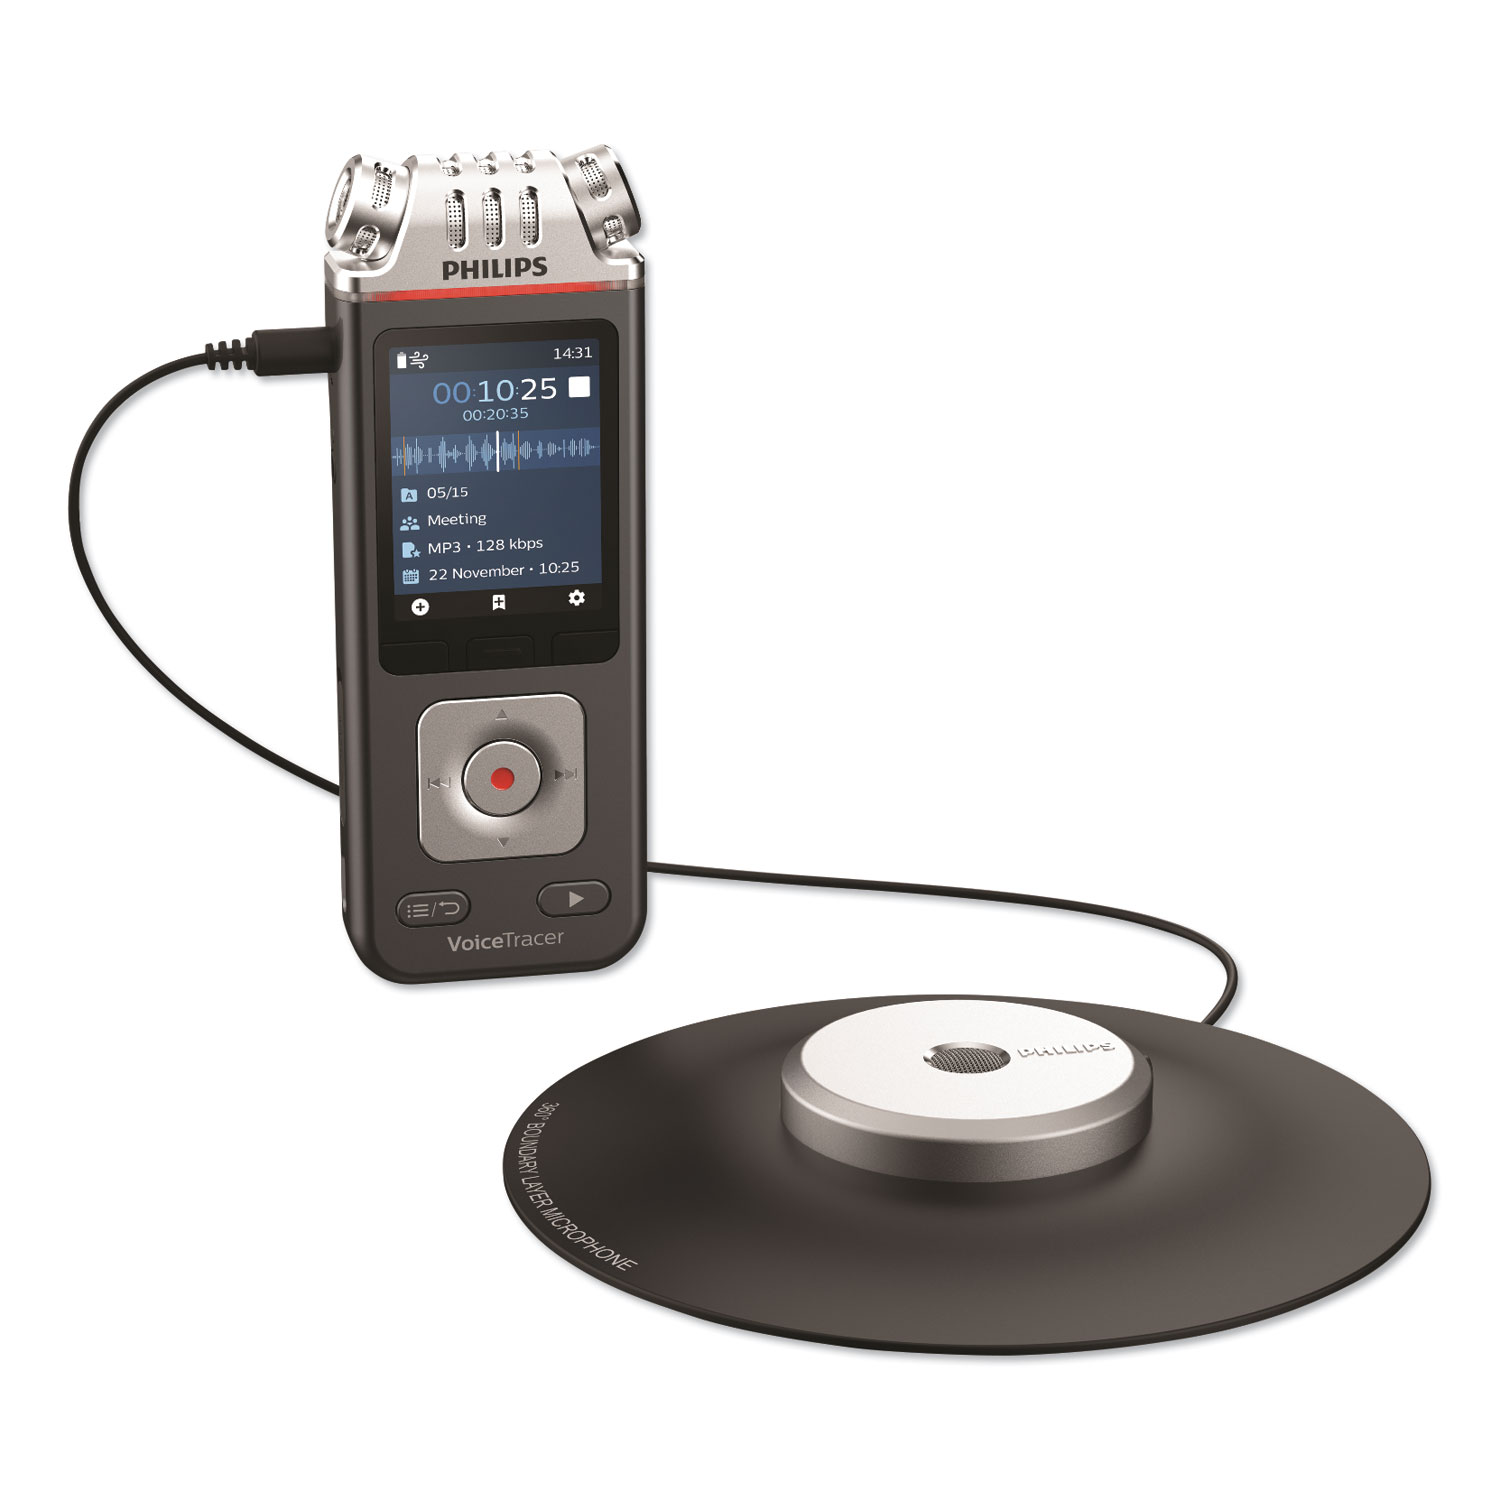  Philips DVT8110 Voice Tracer 8110 Digital Recorder, 8 GB, Black (PSPDVT8110) 